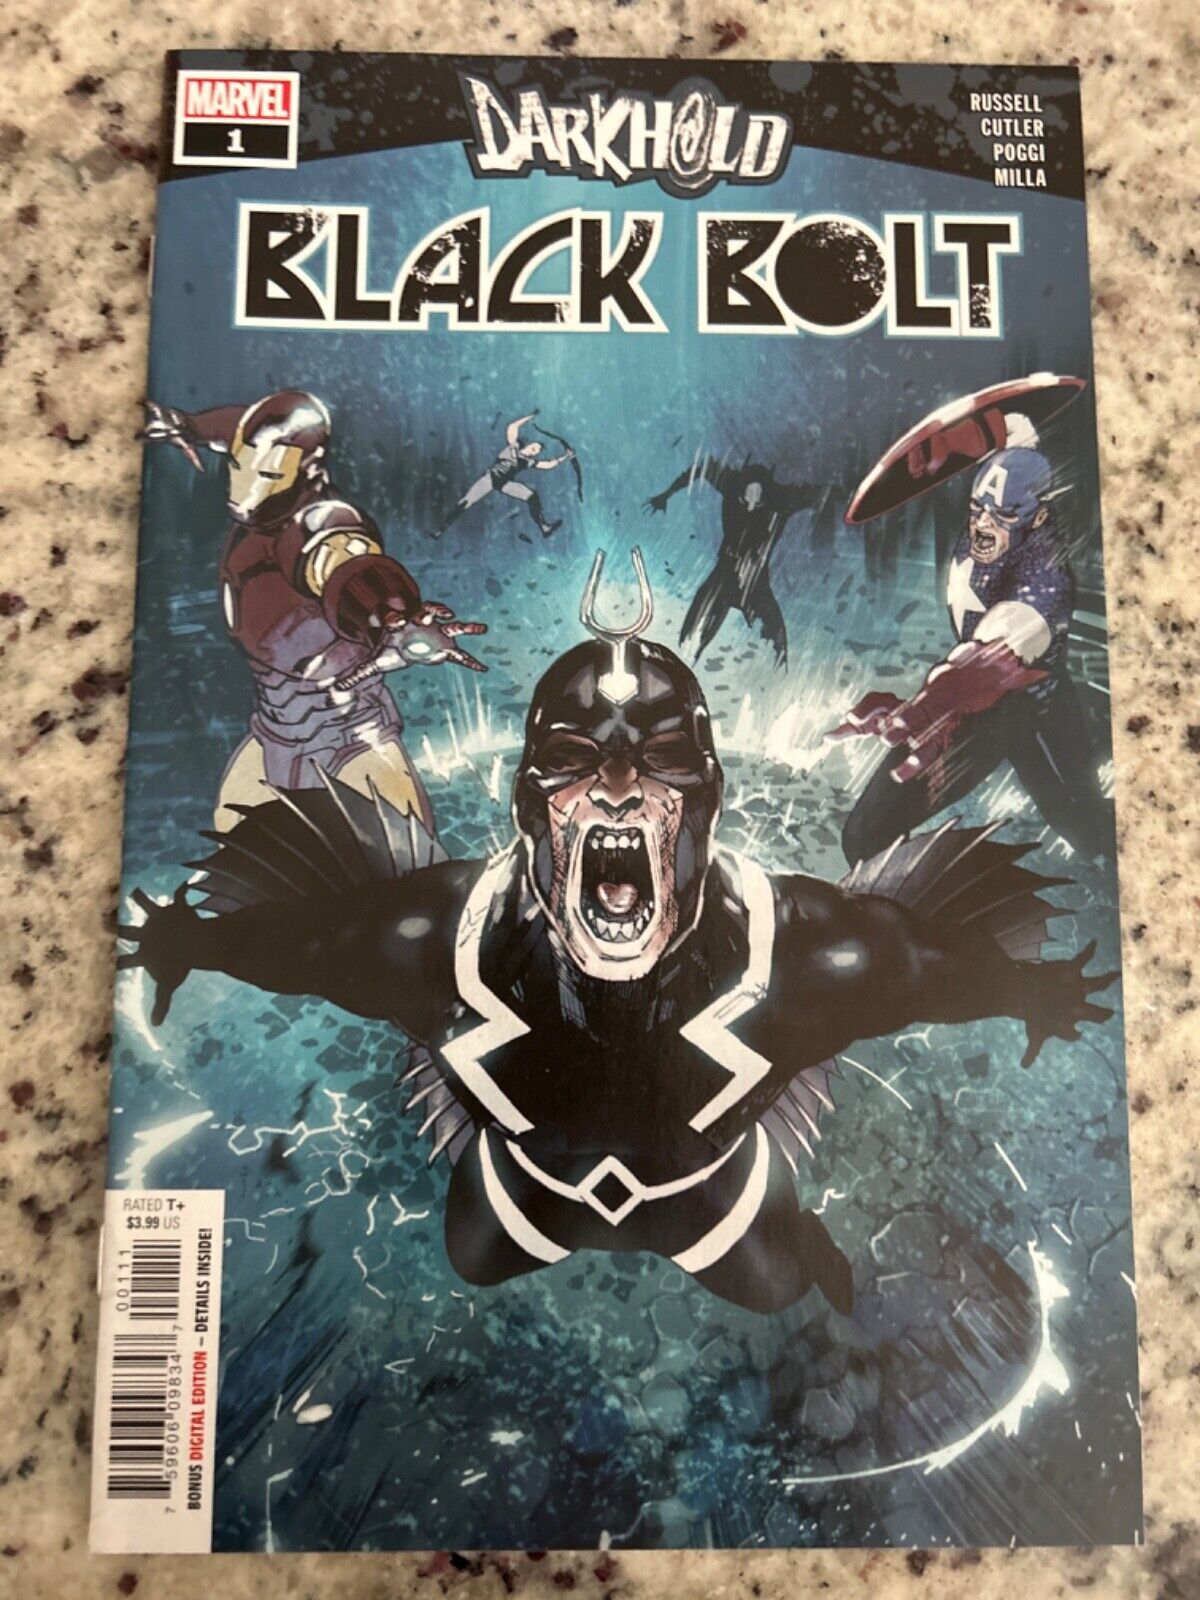 Darkhold: Black Bolt #1 Vol. 1 (Marvel, 2022) vf